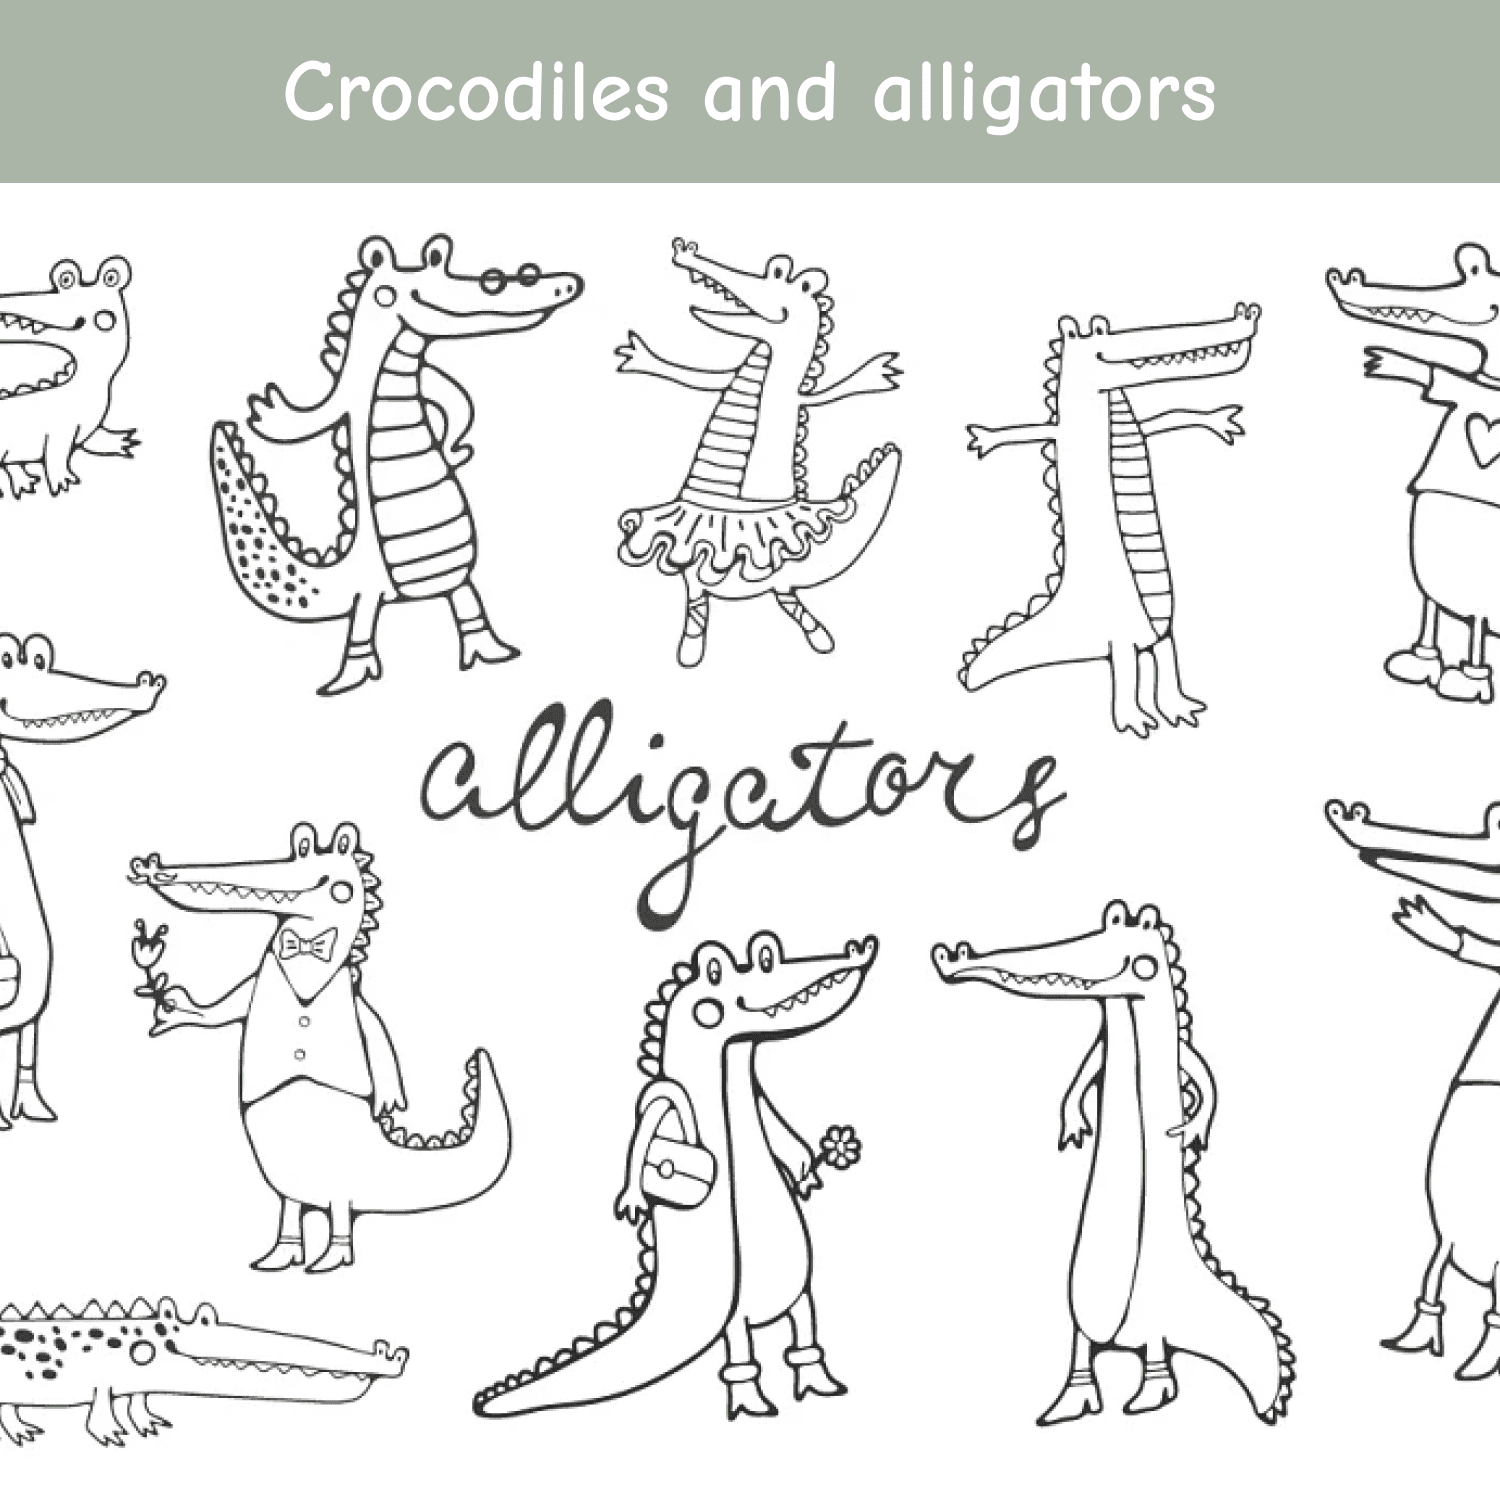 Crocodiles and alligators.